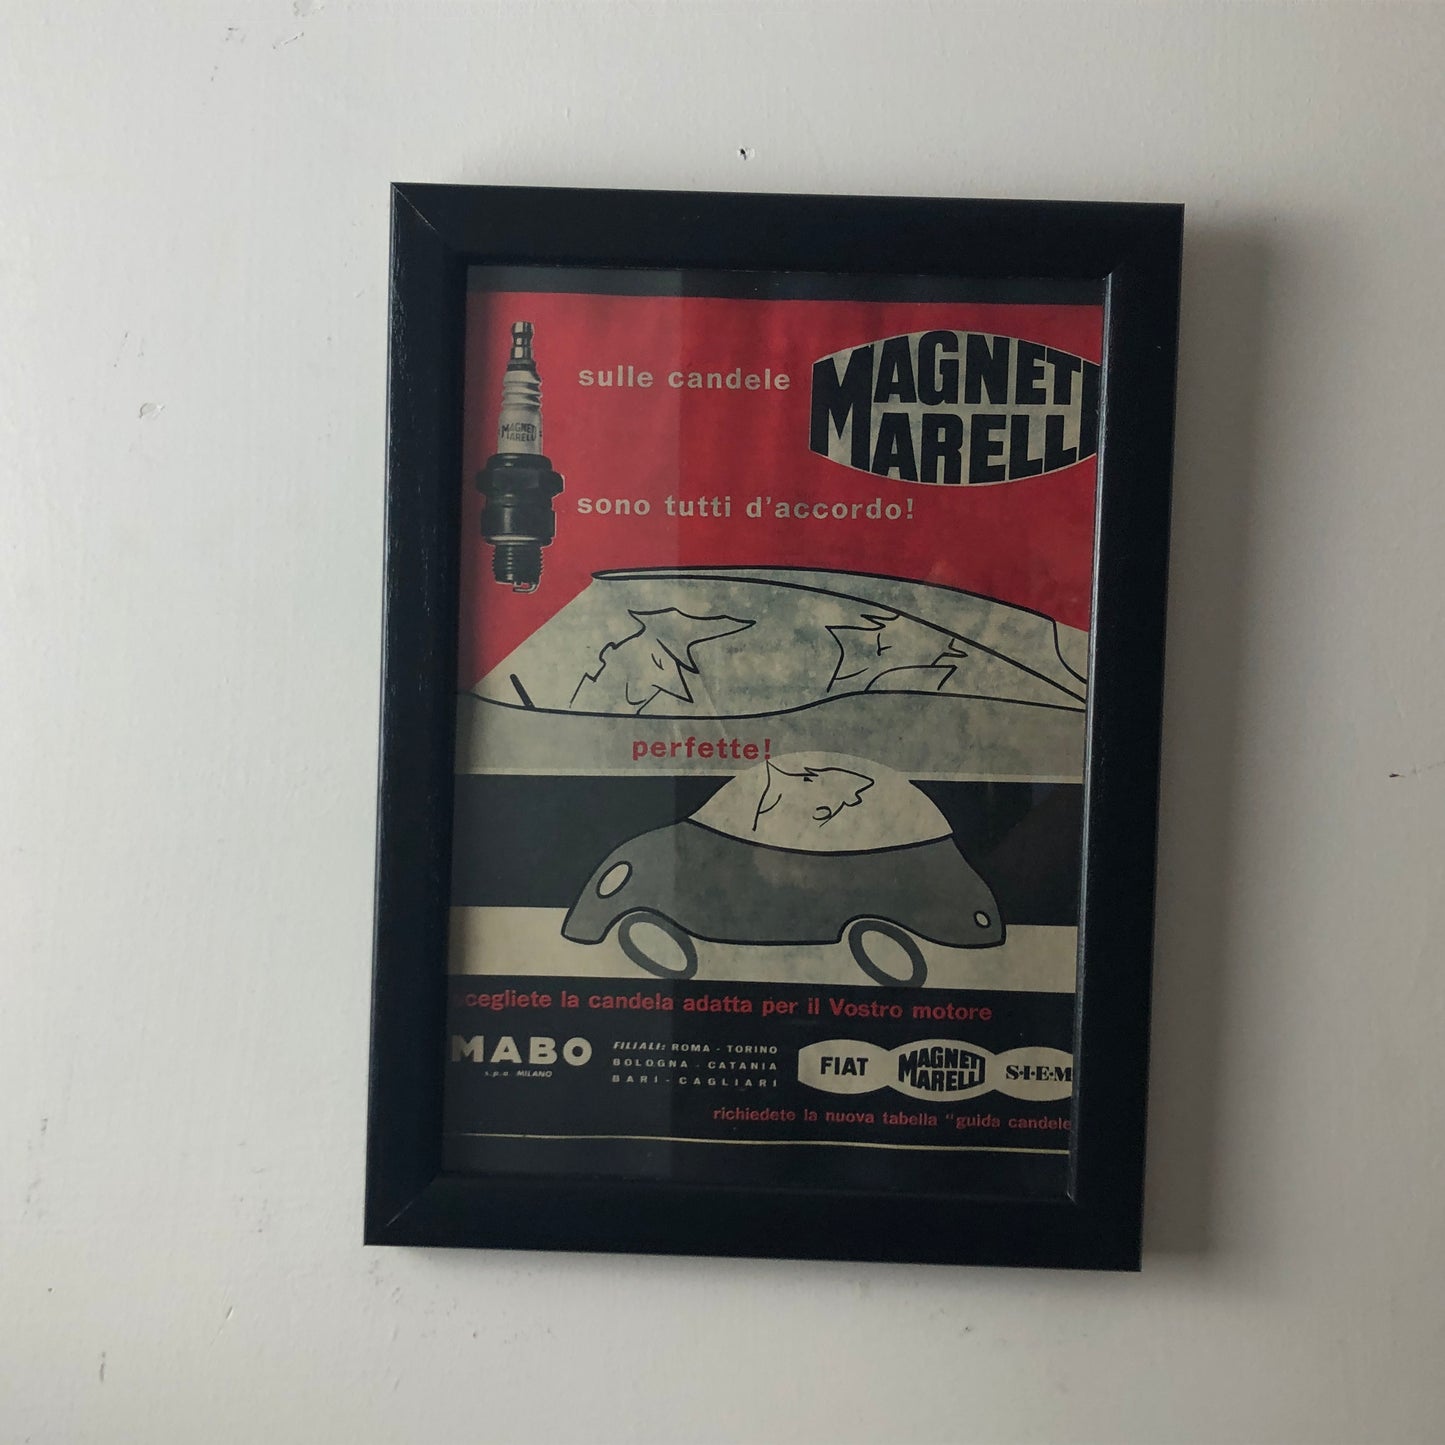 Magneti Marelli, Pubblicità Anno 1960 Candele Magneti Marelli Disegnata da Amleto Dalla Costa